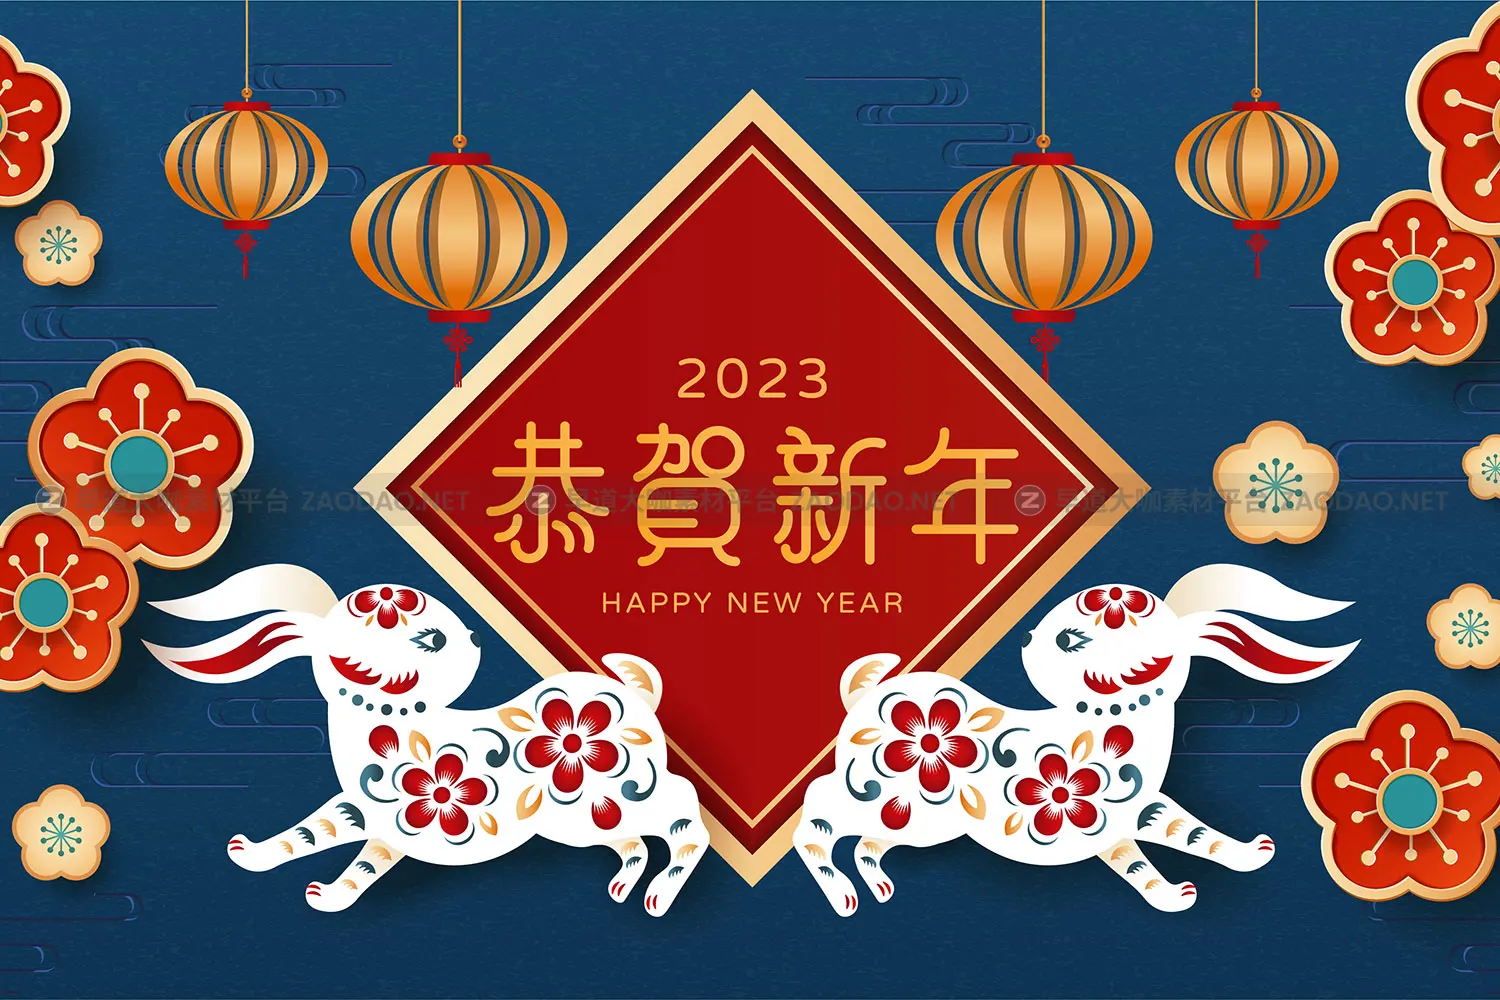 2023农历新年兔年春节恭贺新年拜年红包封面海报设计EPS矢量素材插图